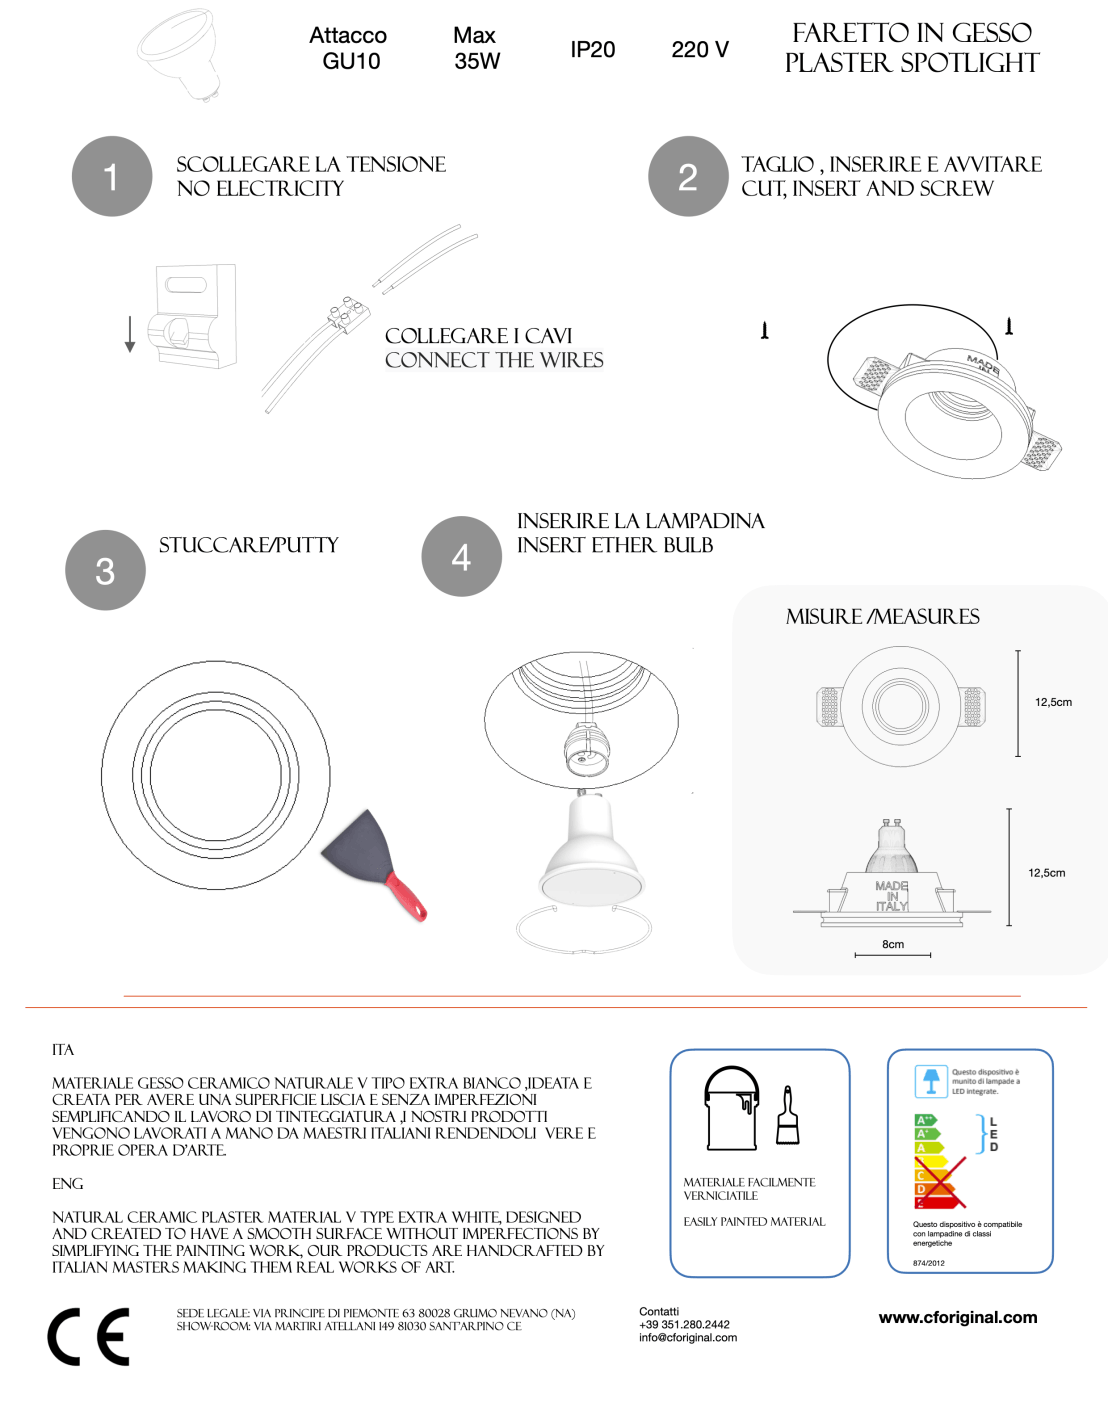 Runder Gips-Einbaustrahler Durchmesser 12,5 cm für GU10-Leuchtmittel